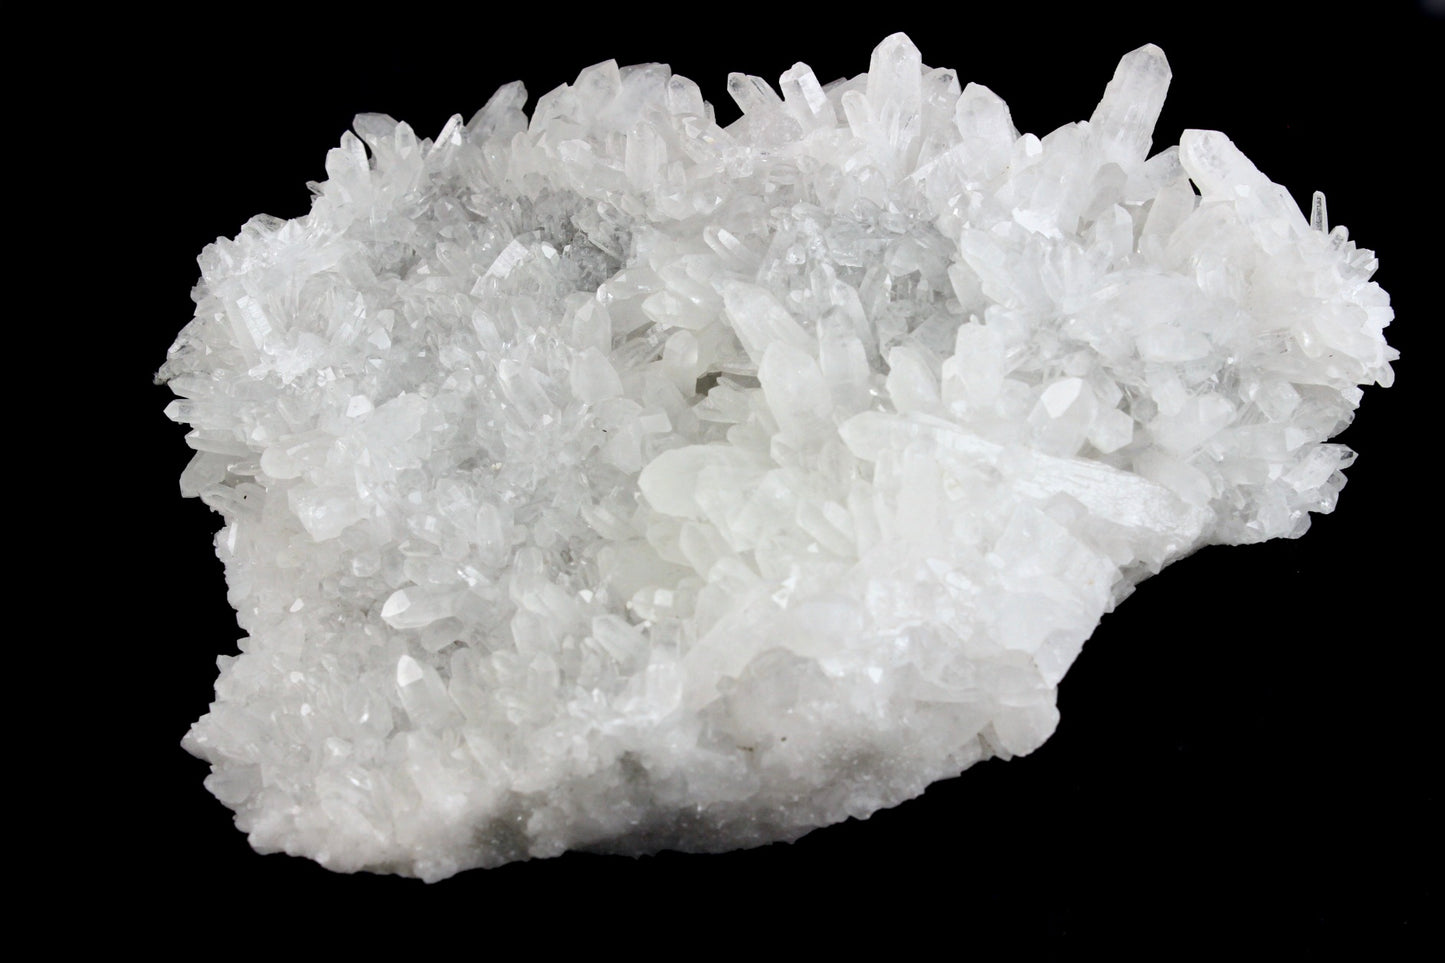 Large Quartz Crystal Cluster